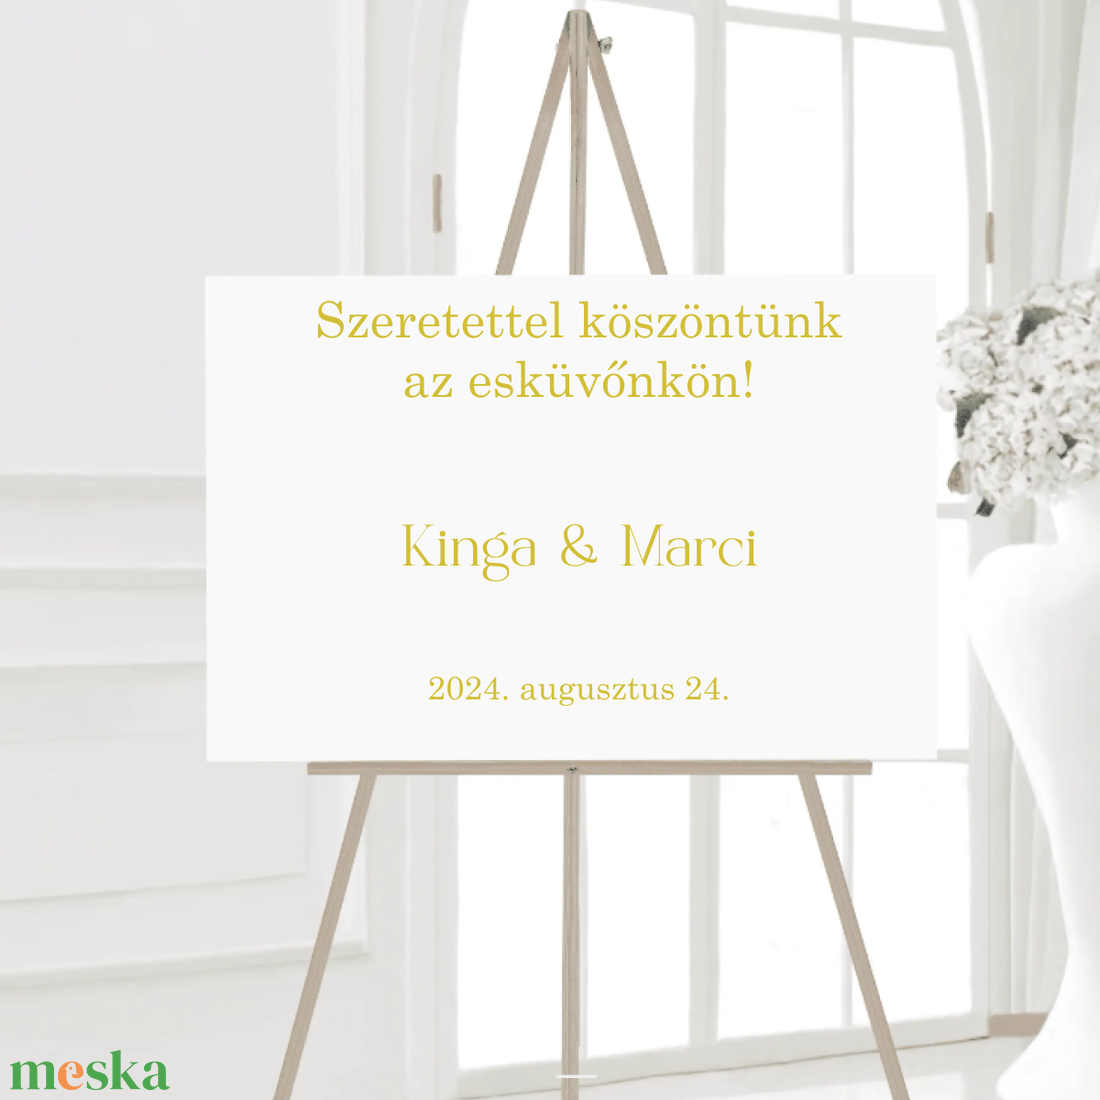 Köszöntünk az esküvőnkön! - esküvői köszöntő tábla matrica - esküvő - dekoráció - tábla & jelzés - Meska.hu